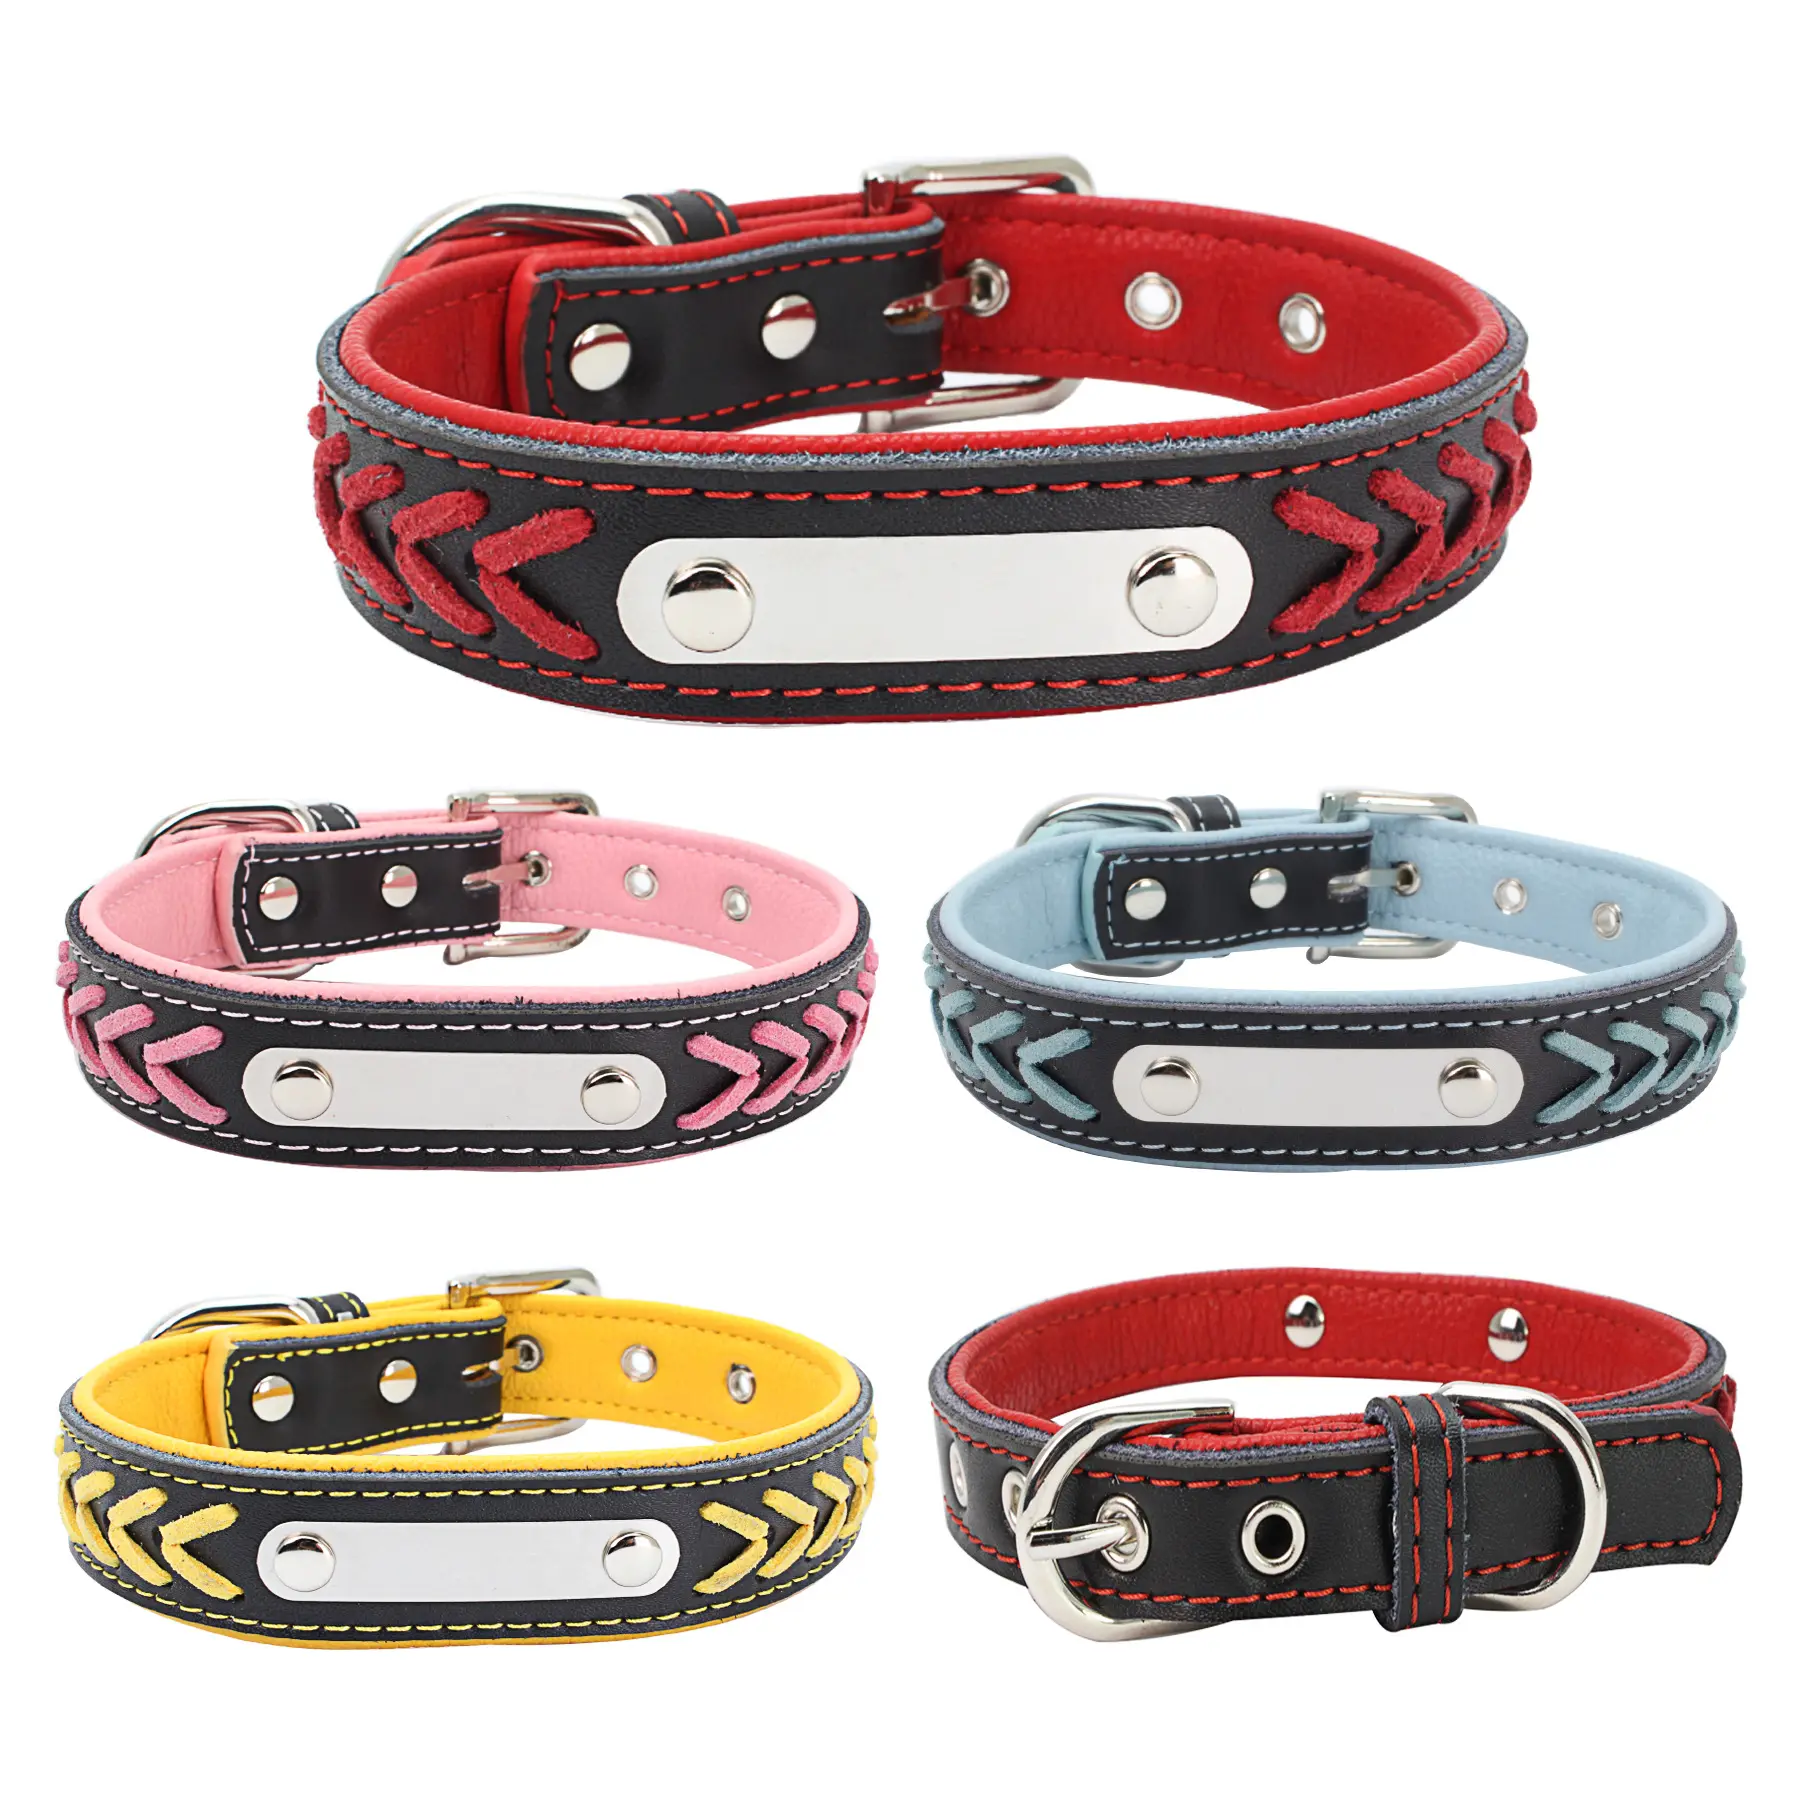 Collare per cani personalizzato collari per animali di lusso cani di piccola taglia targhetta identificativa targhetta per animali domestici collari e guinzaglio